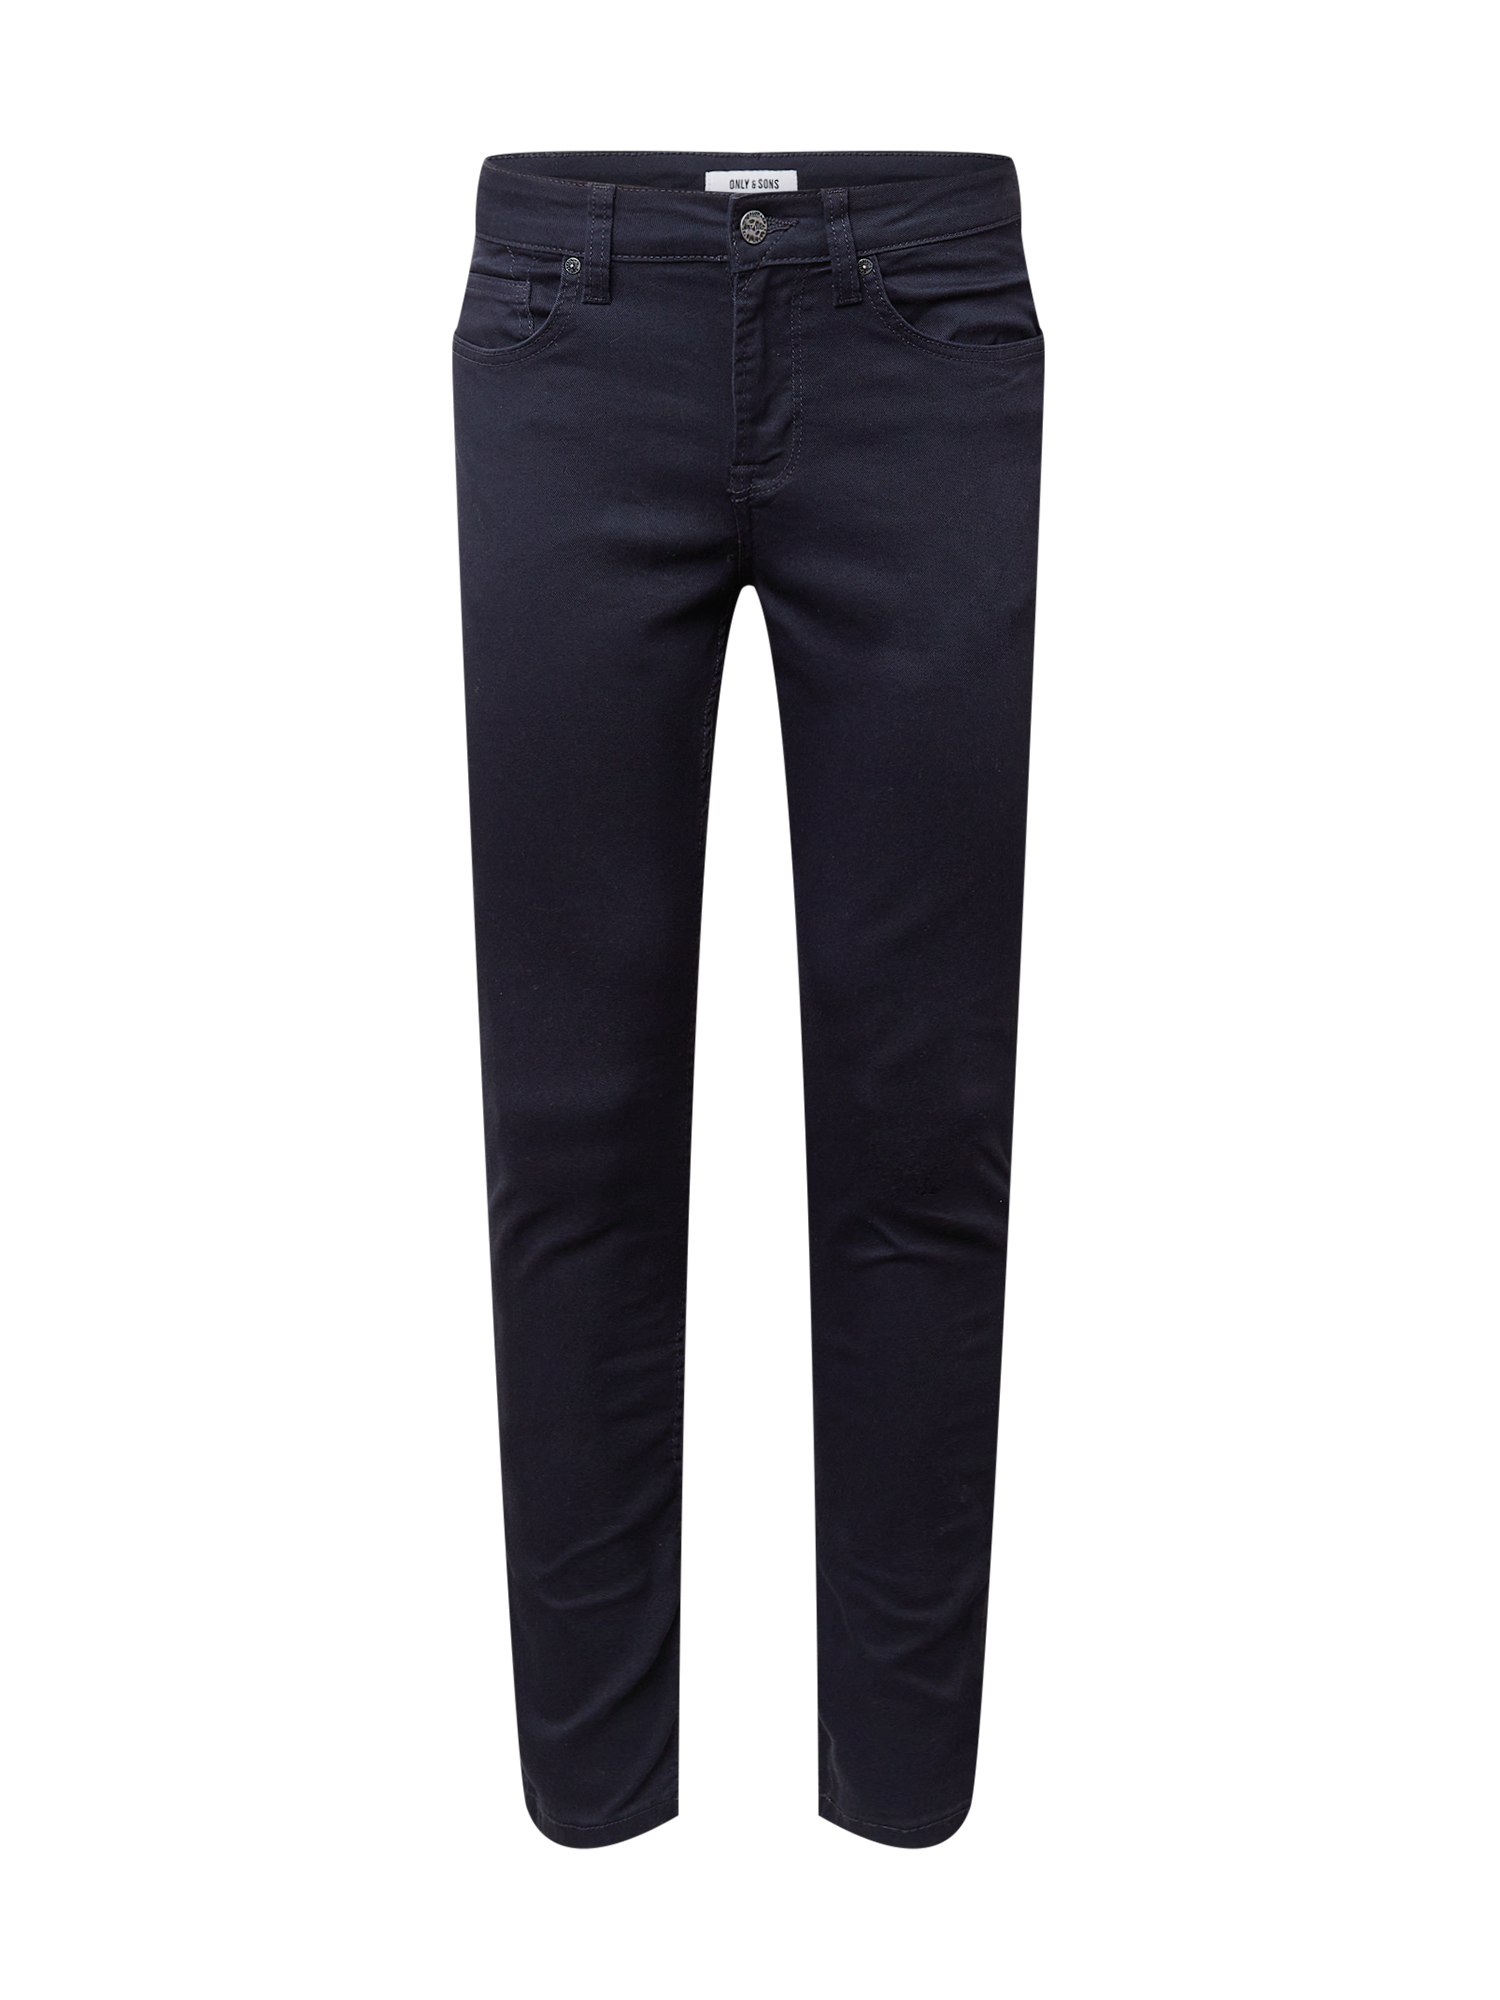 Spodnie Odzież Only & Sons Spodnie Loom w kolorze Granatowym 